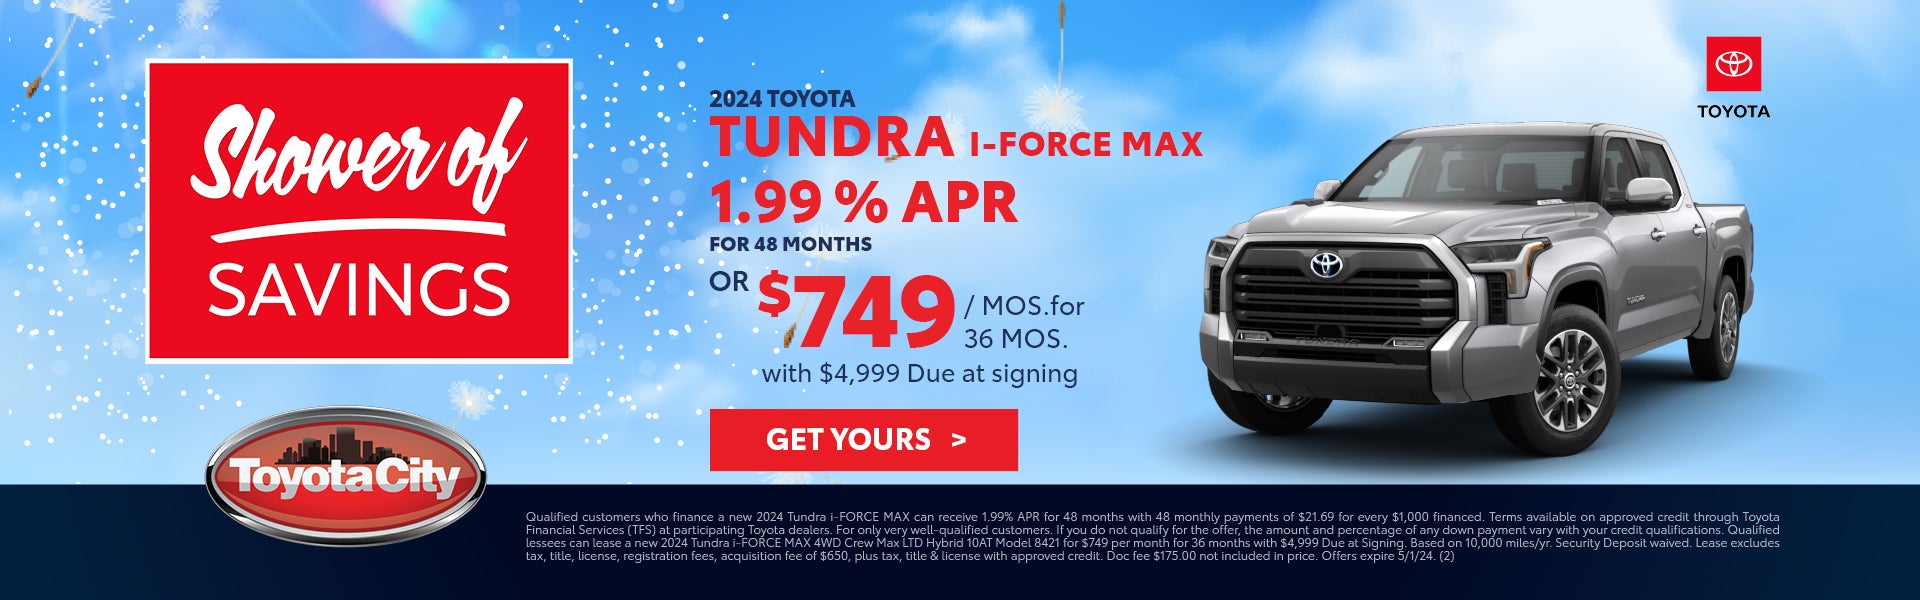 24 Tundra I-Force Max